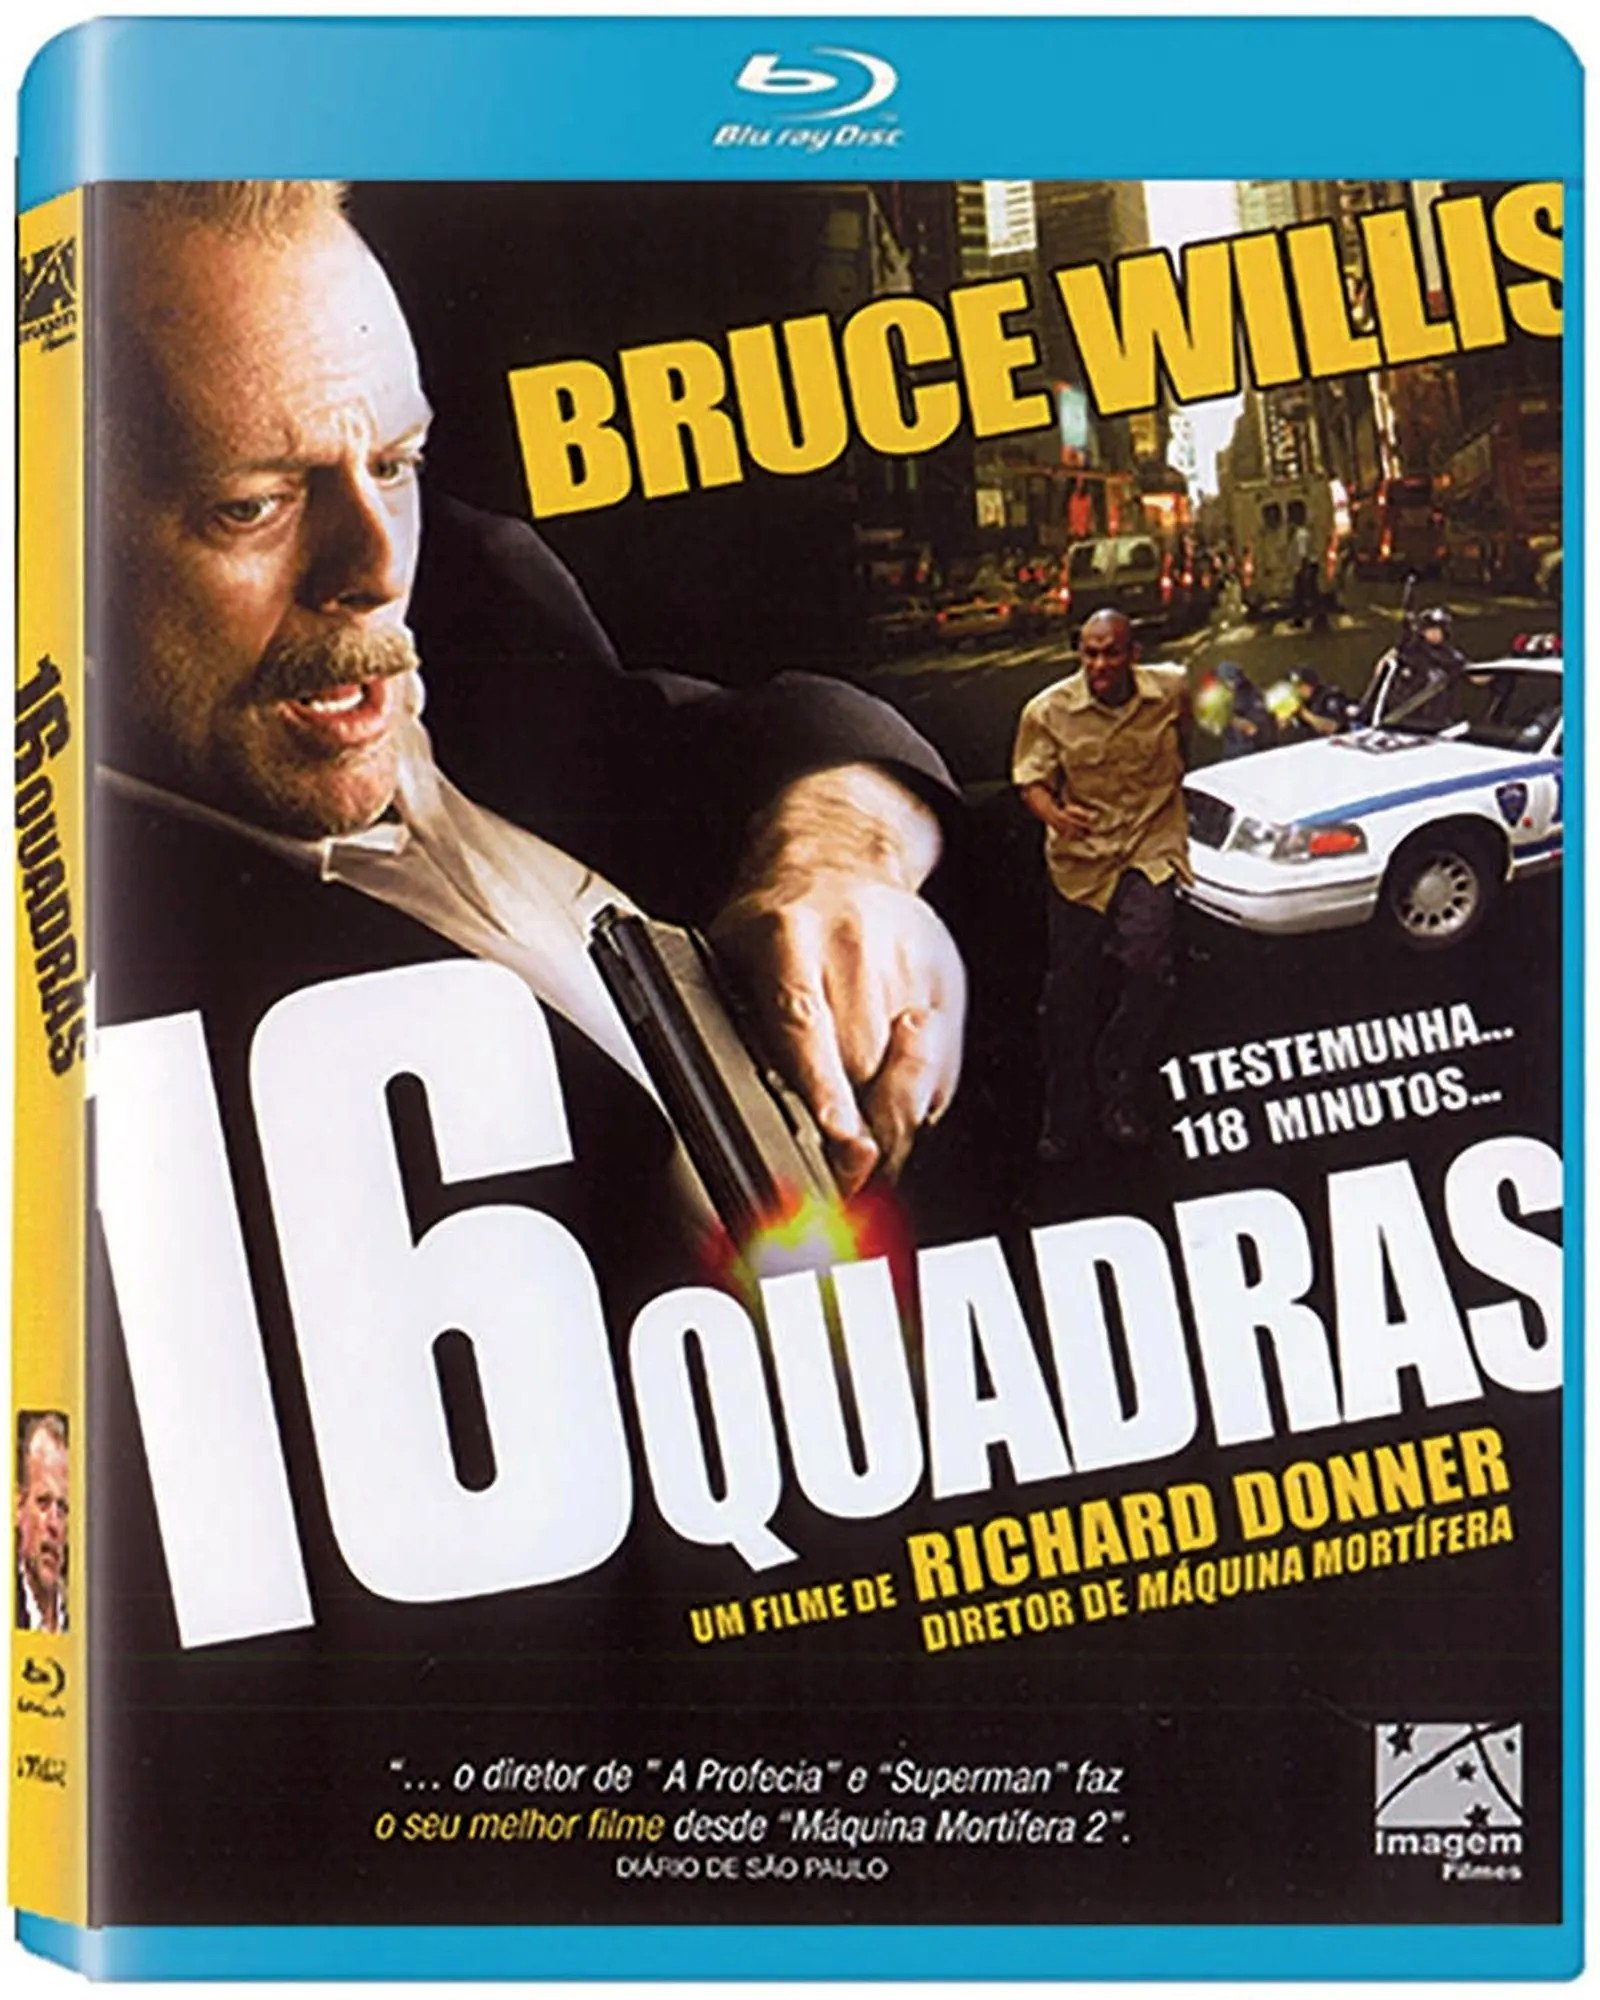 16 QUADRAS - Blu-ray